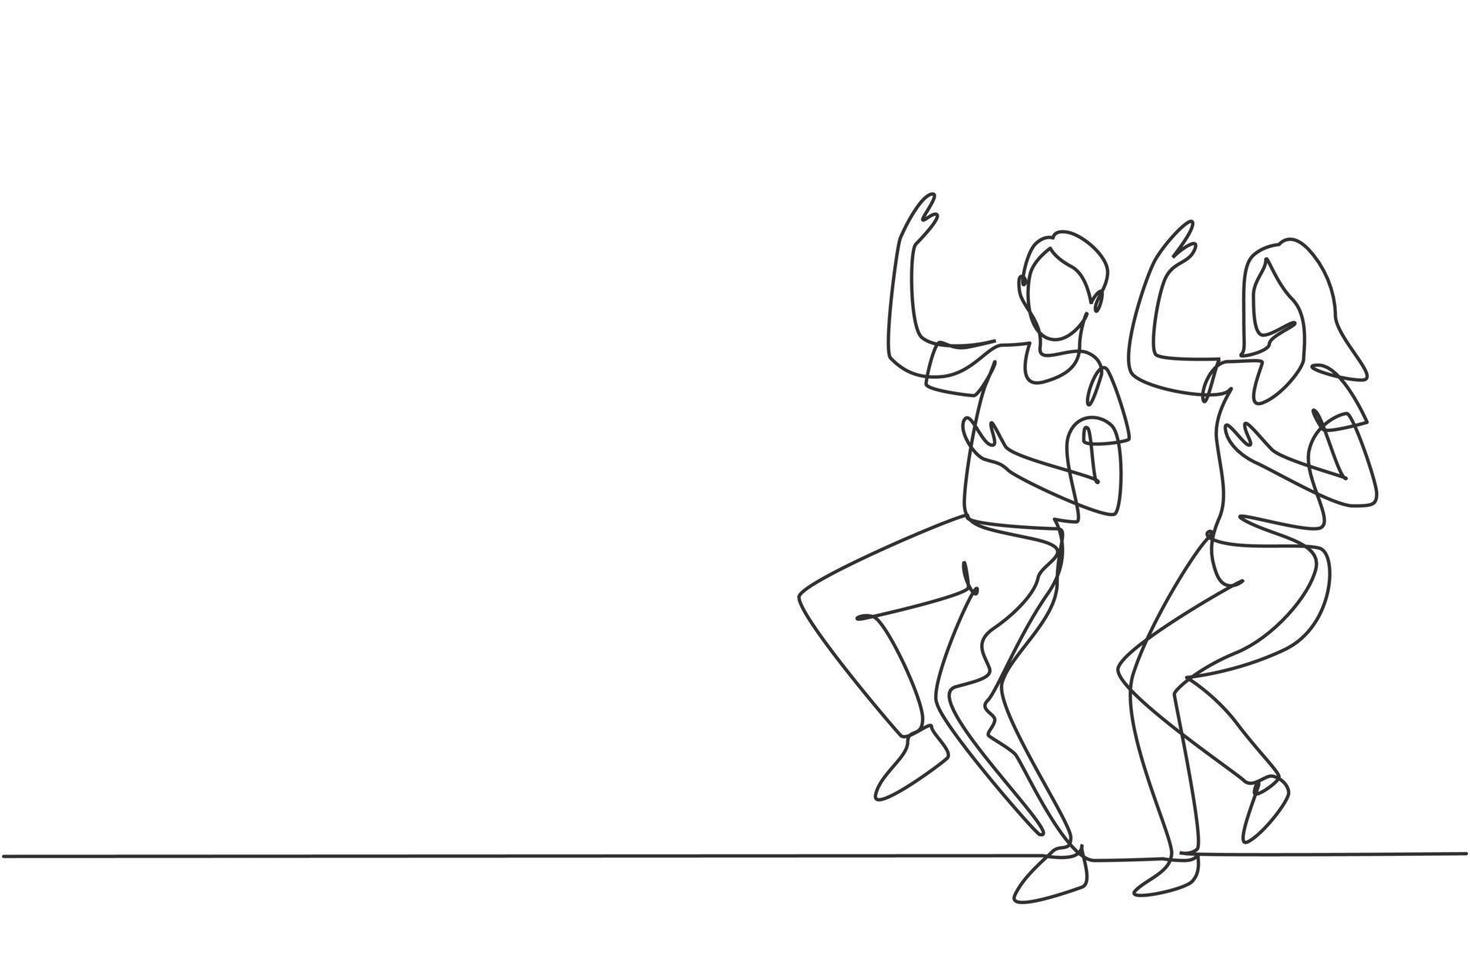 singolo disegno a linea continua uomo e donna che ballano lindy hop o swing. personaggi maschili e femminili che eseguono danza a scuola. coppia felice. illustrazione vettoriale di disegno grafico di disegno grafico di una linea dinamica